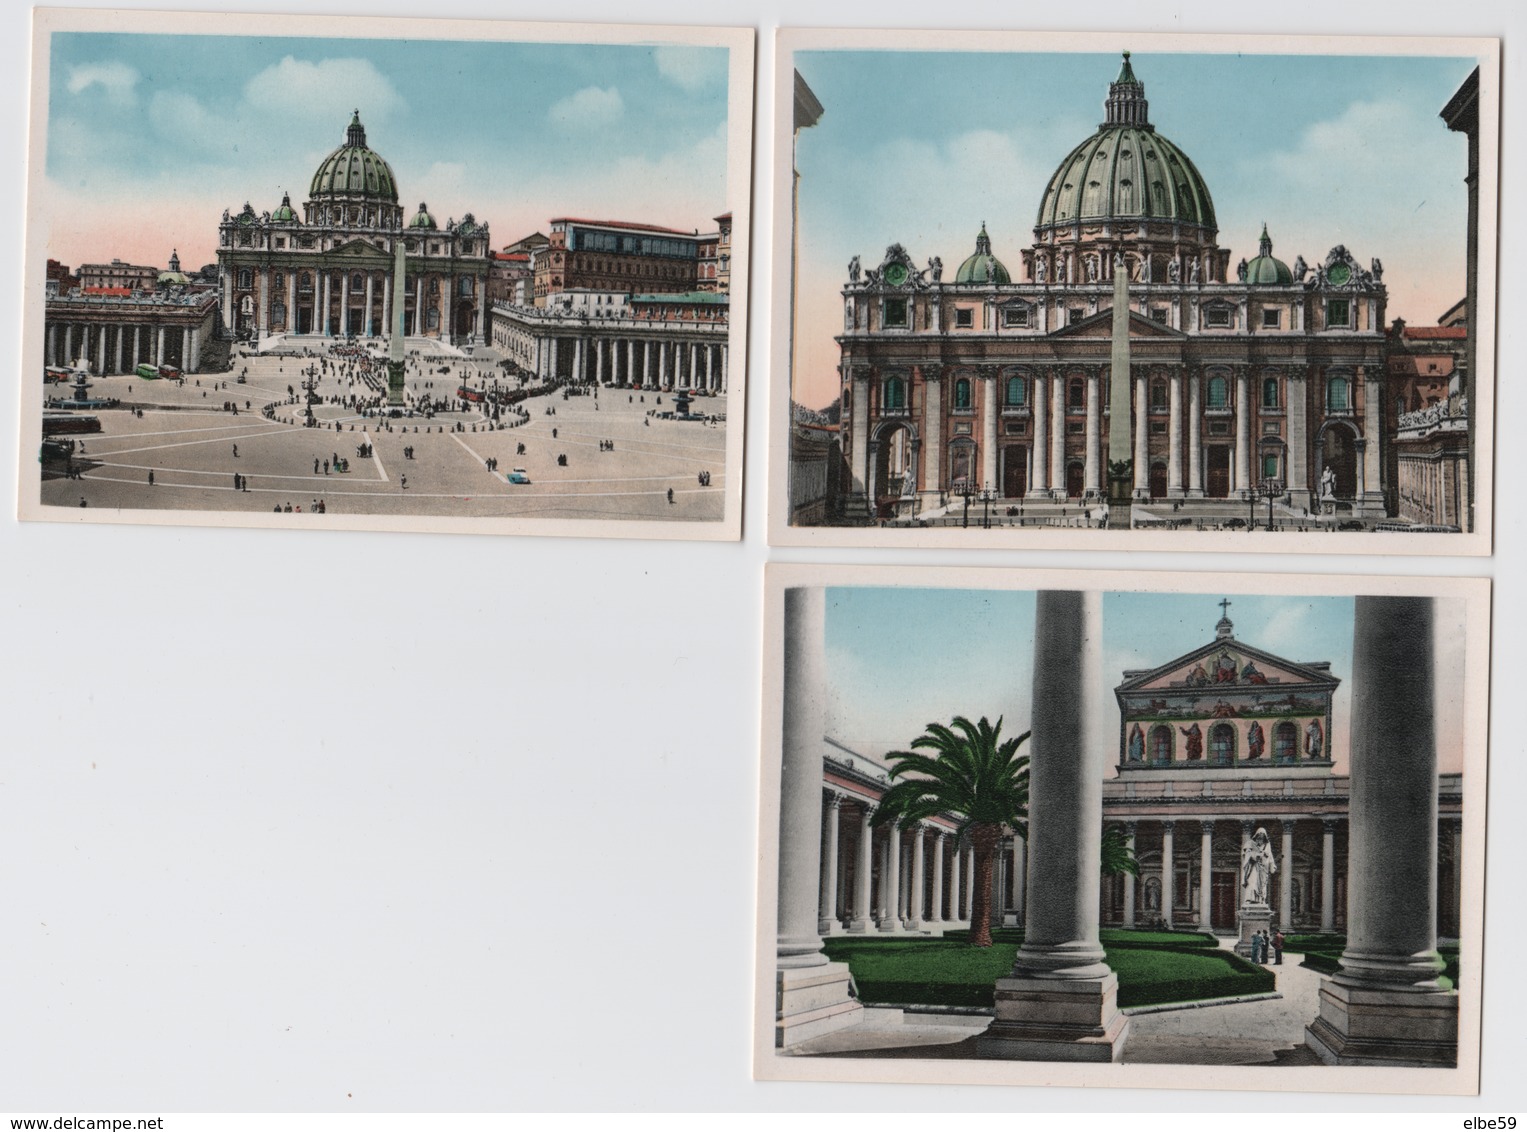 Roma (RM - Lazio) 20 foto 10,5x7,5 (ne restano 15), parte IIa in una taschina di cartone